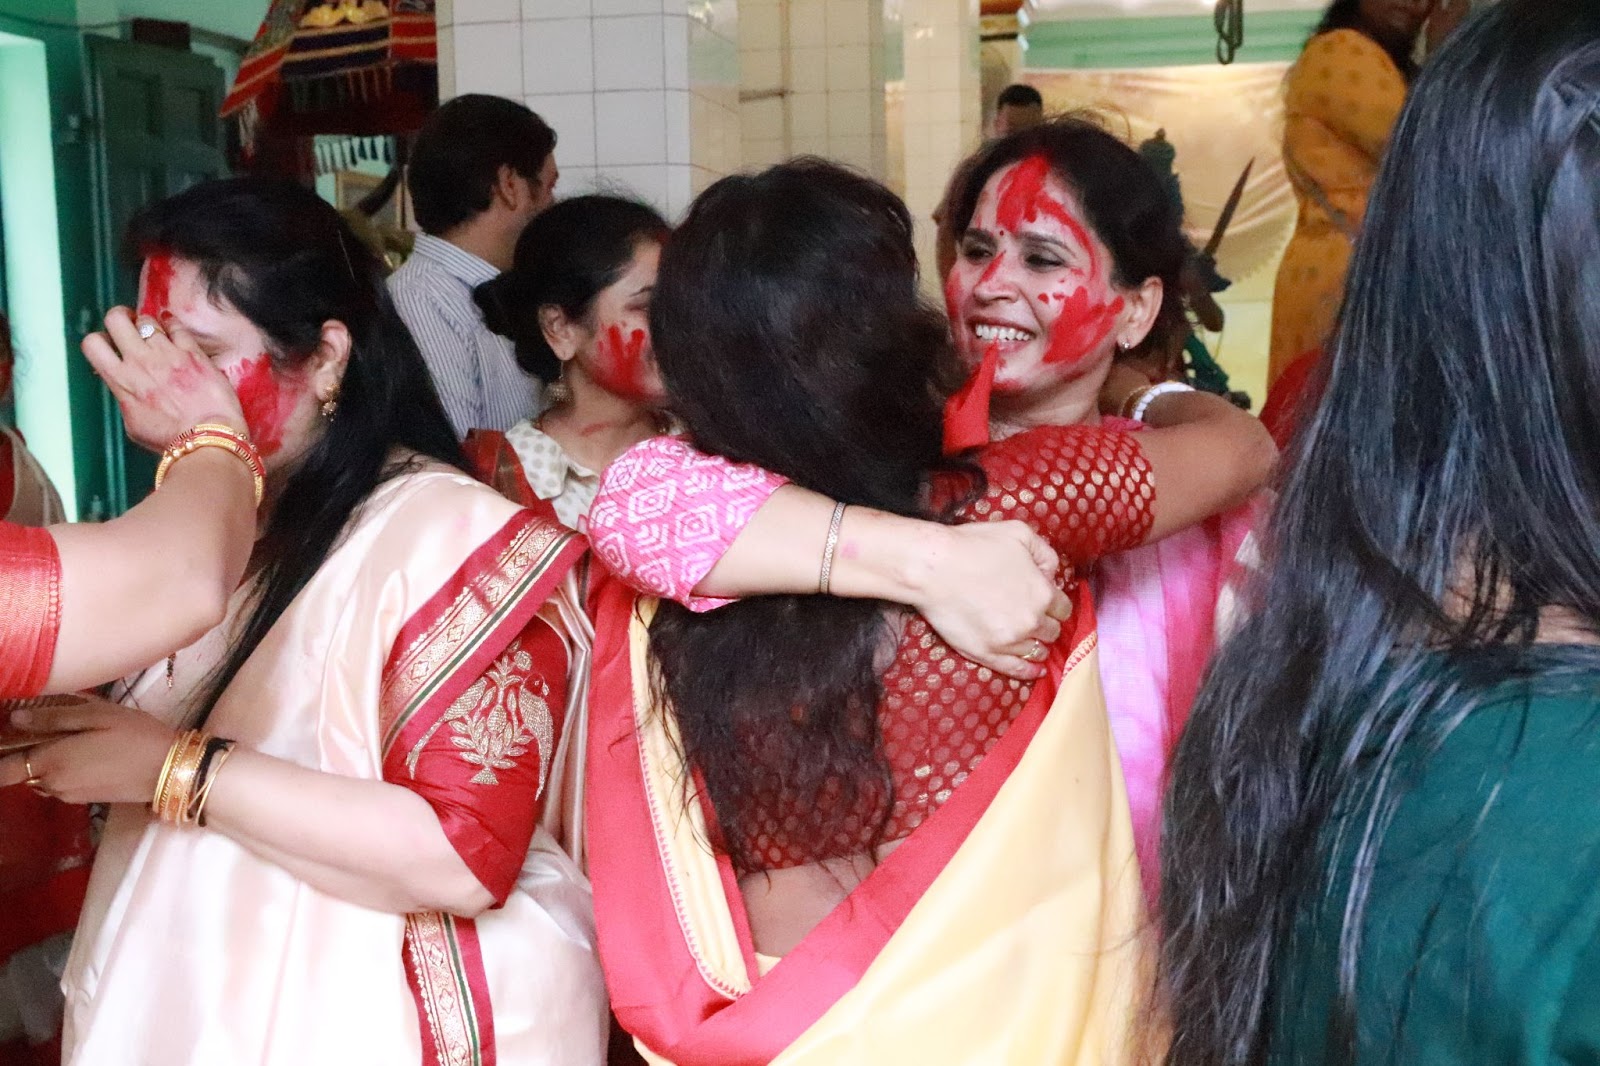 Lễ hội Ấn Độ rực rỡ màu sắc giữa Sài Gòn - 6